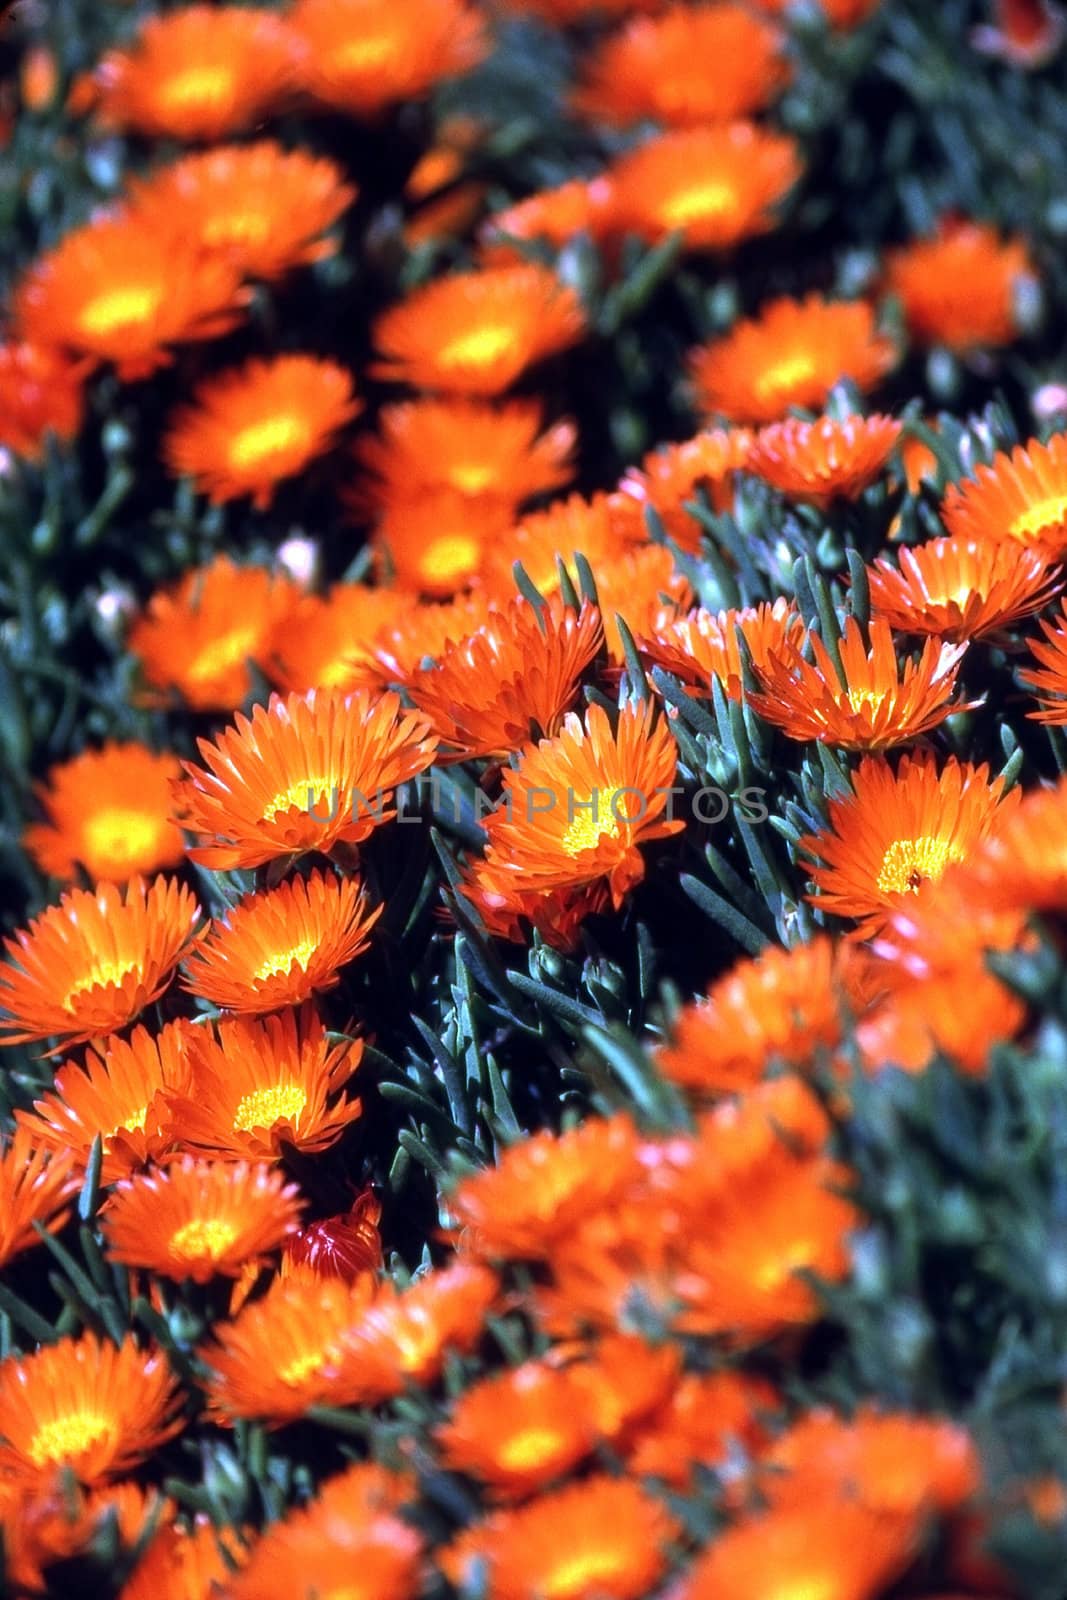 Orange daisies by jol66